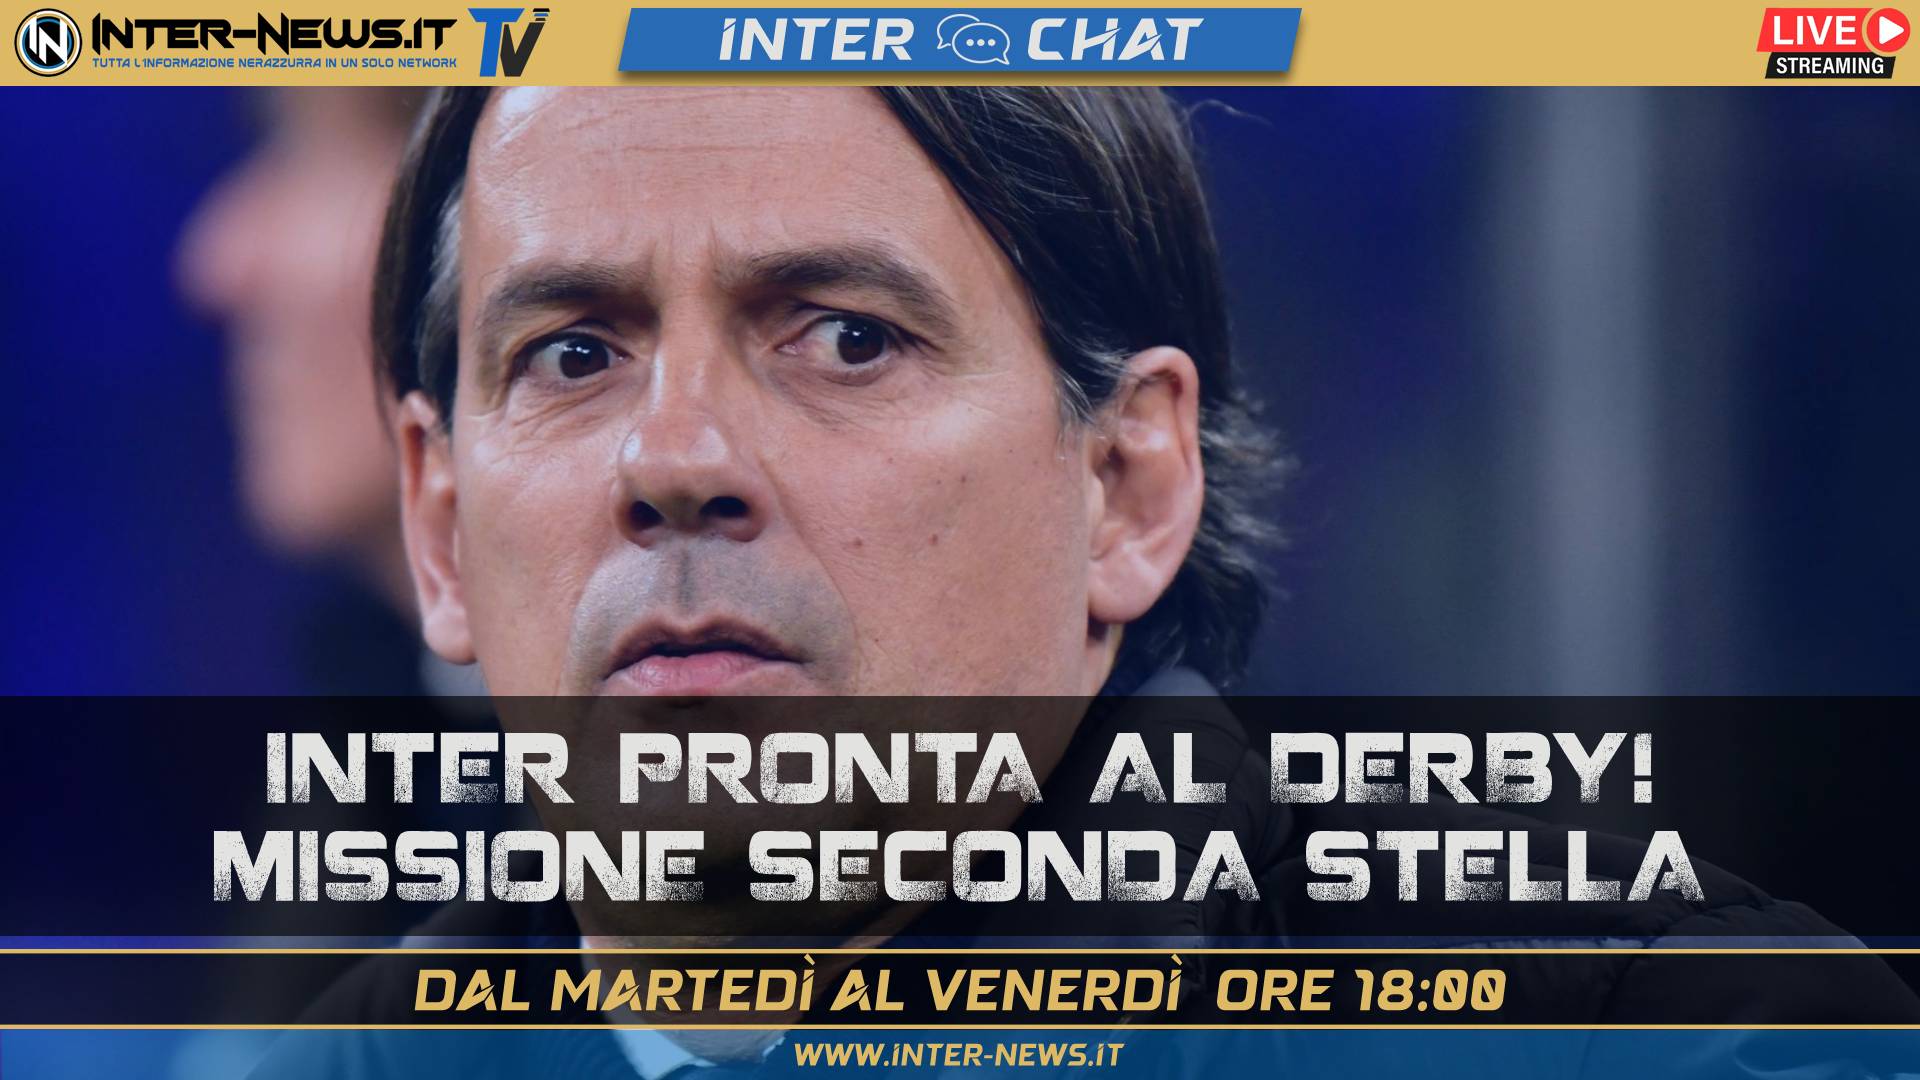 Inter pronta al derby: missione seconda stella! | Inter Chat LIVE